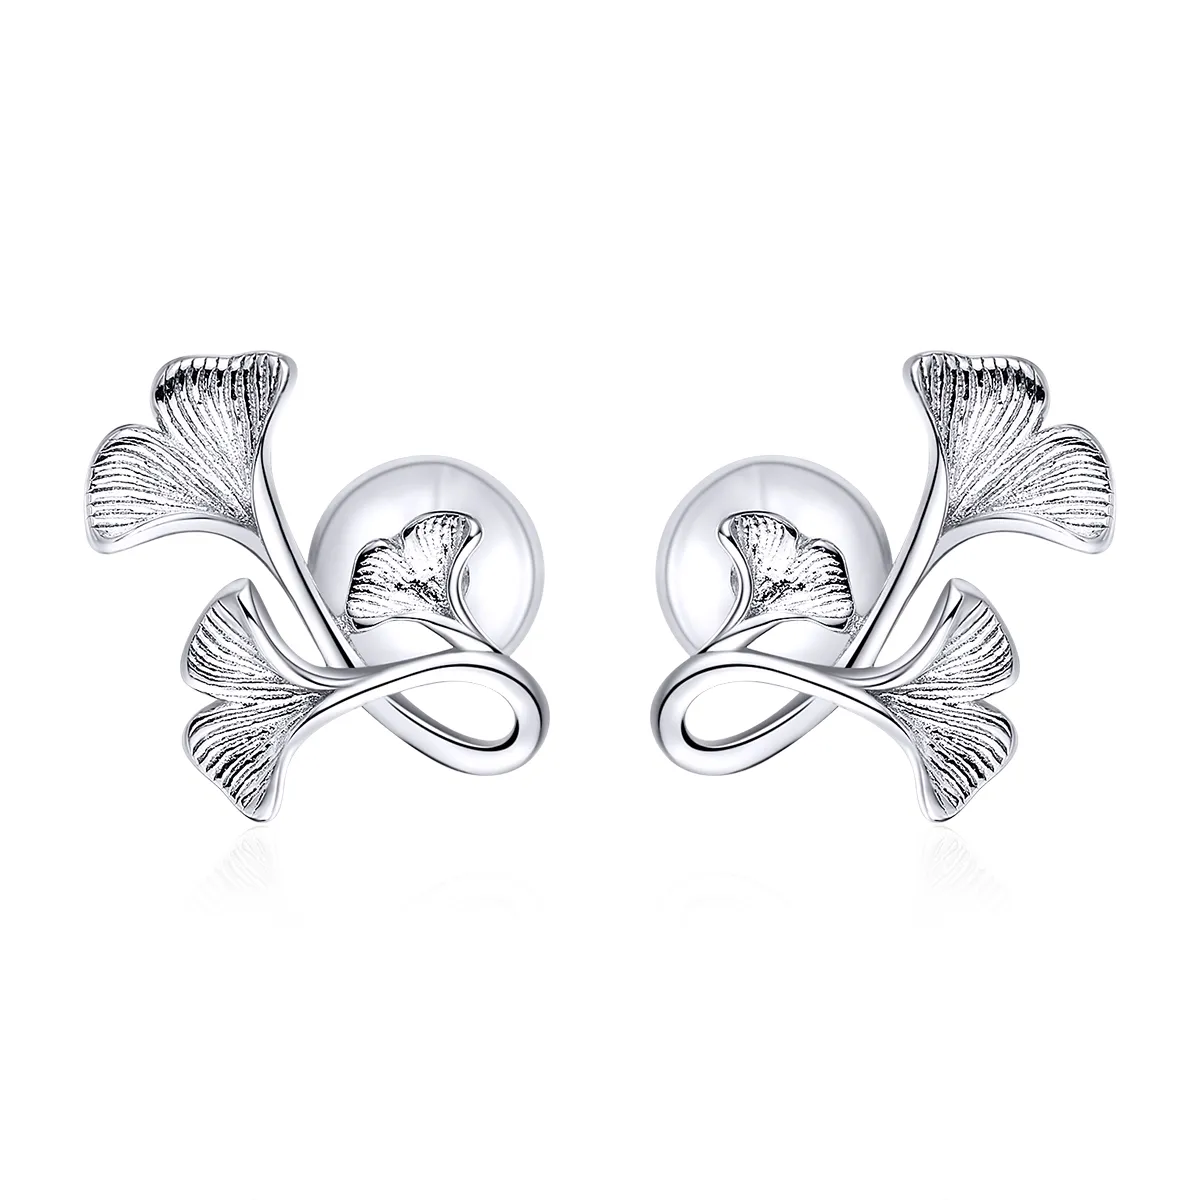 Pandora Style Silver Ginkgo Leaf Stud Earrings - BSE328